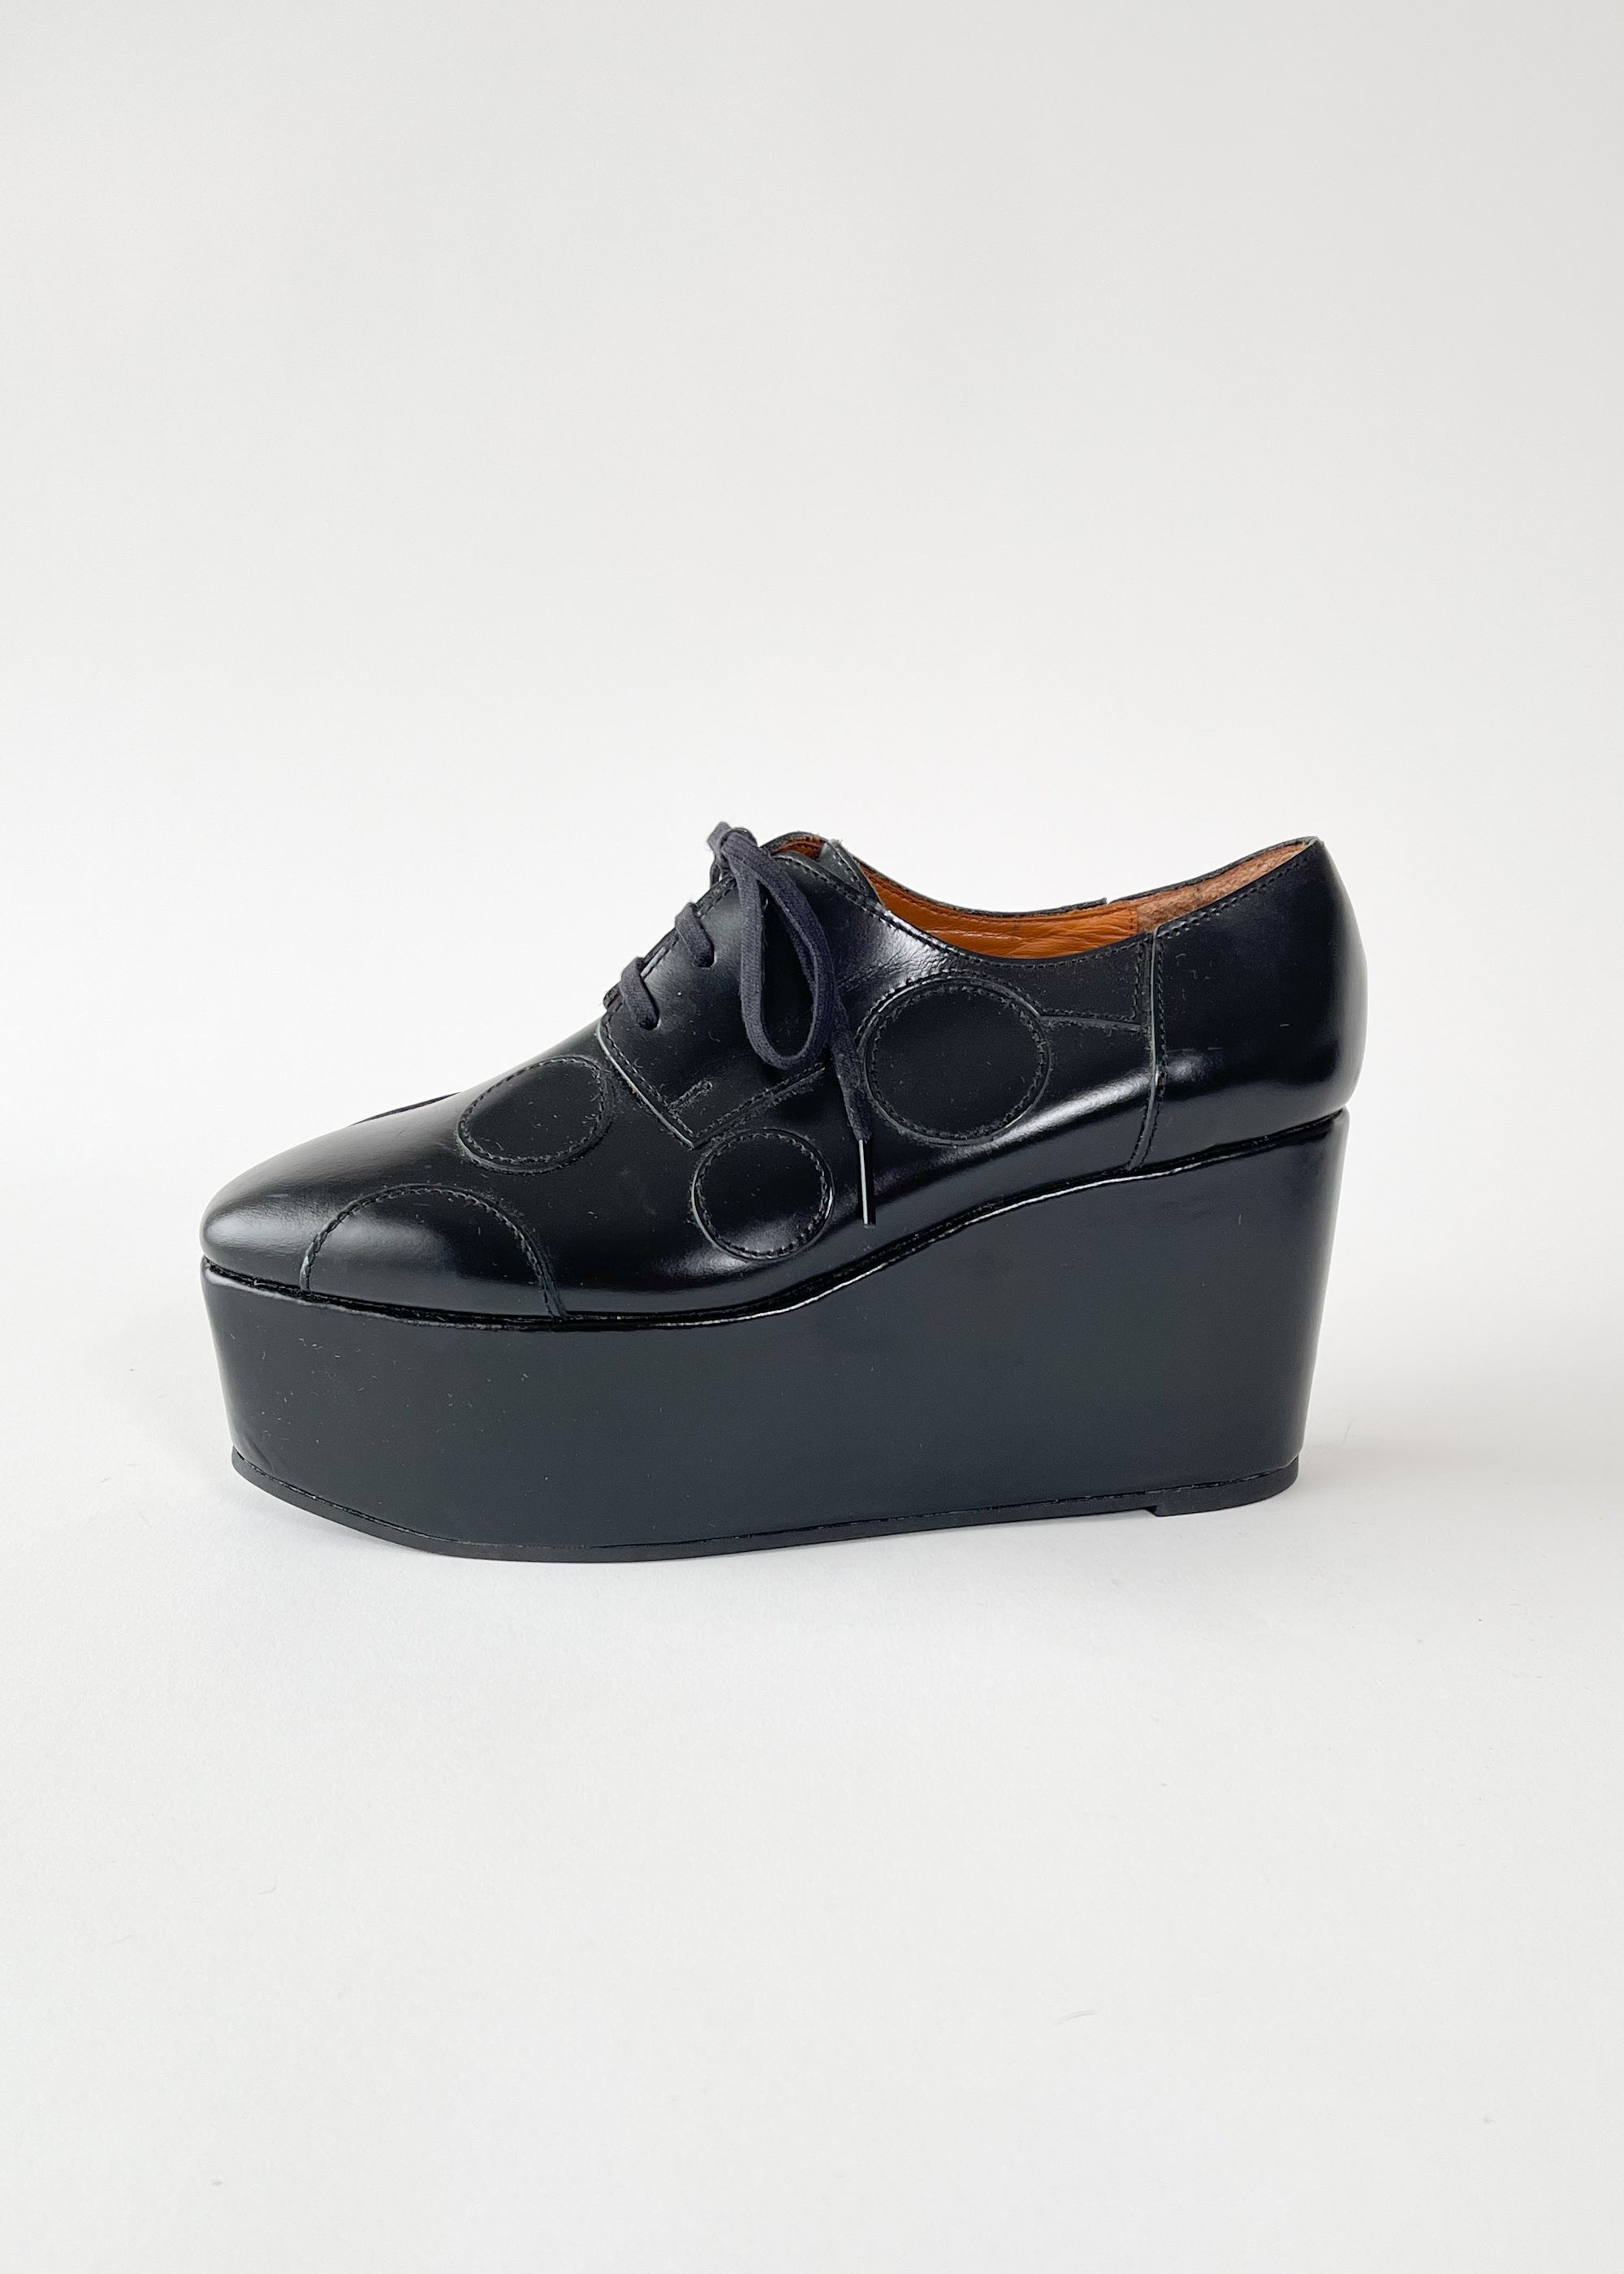 udvande Selv tak Du bliver bedre Junya Watanabe Comme des Garcons Platform Circle Shoes - Raleigh Vintage